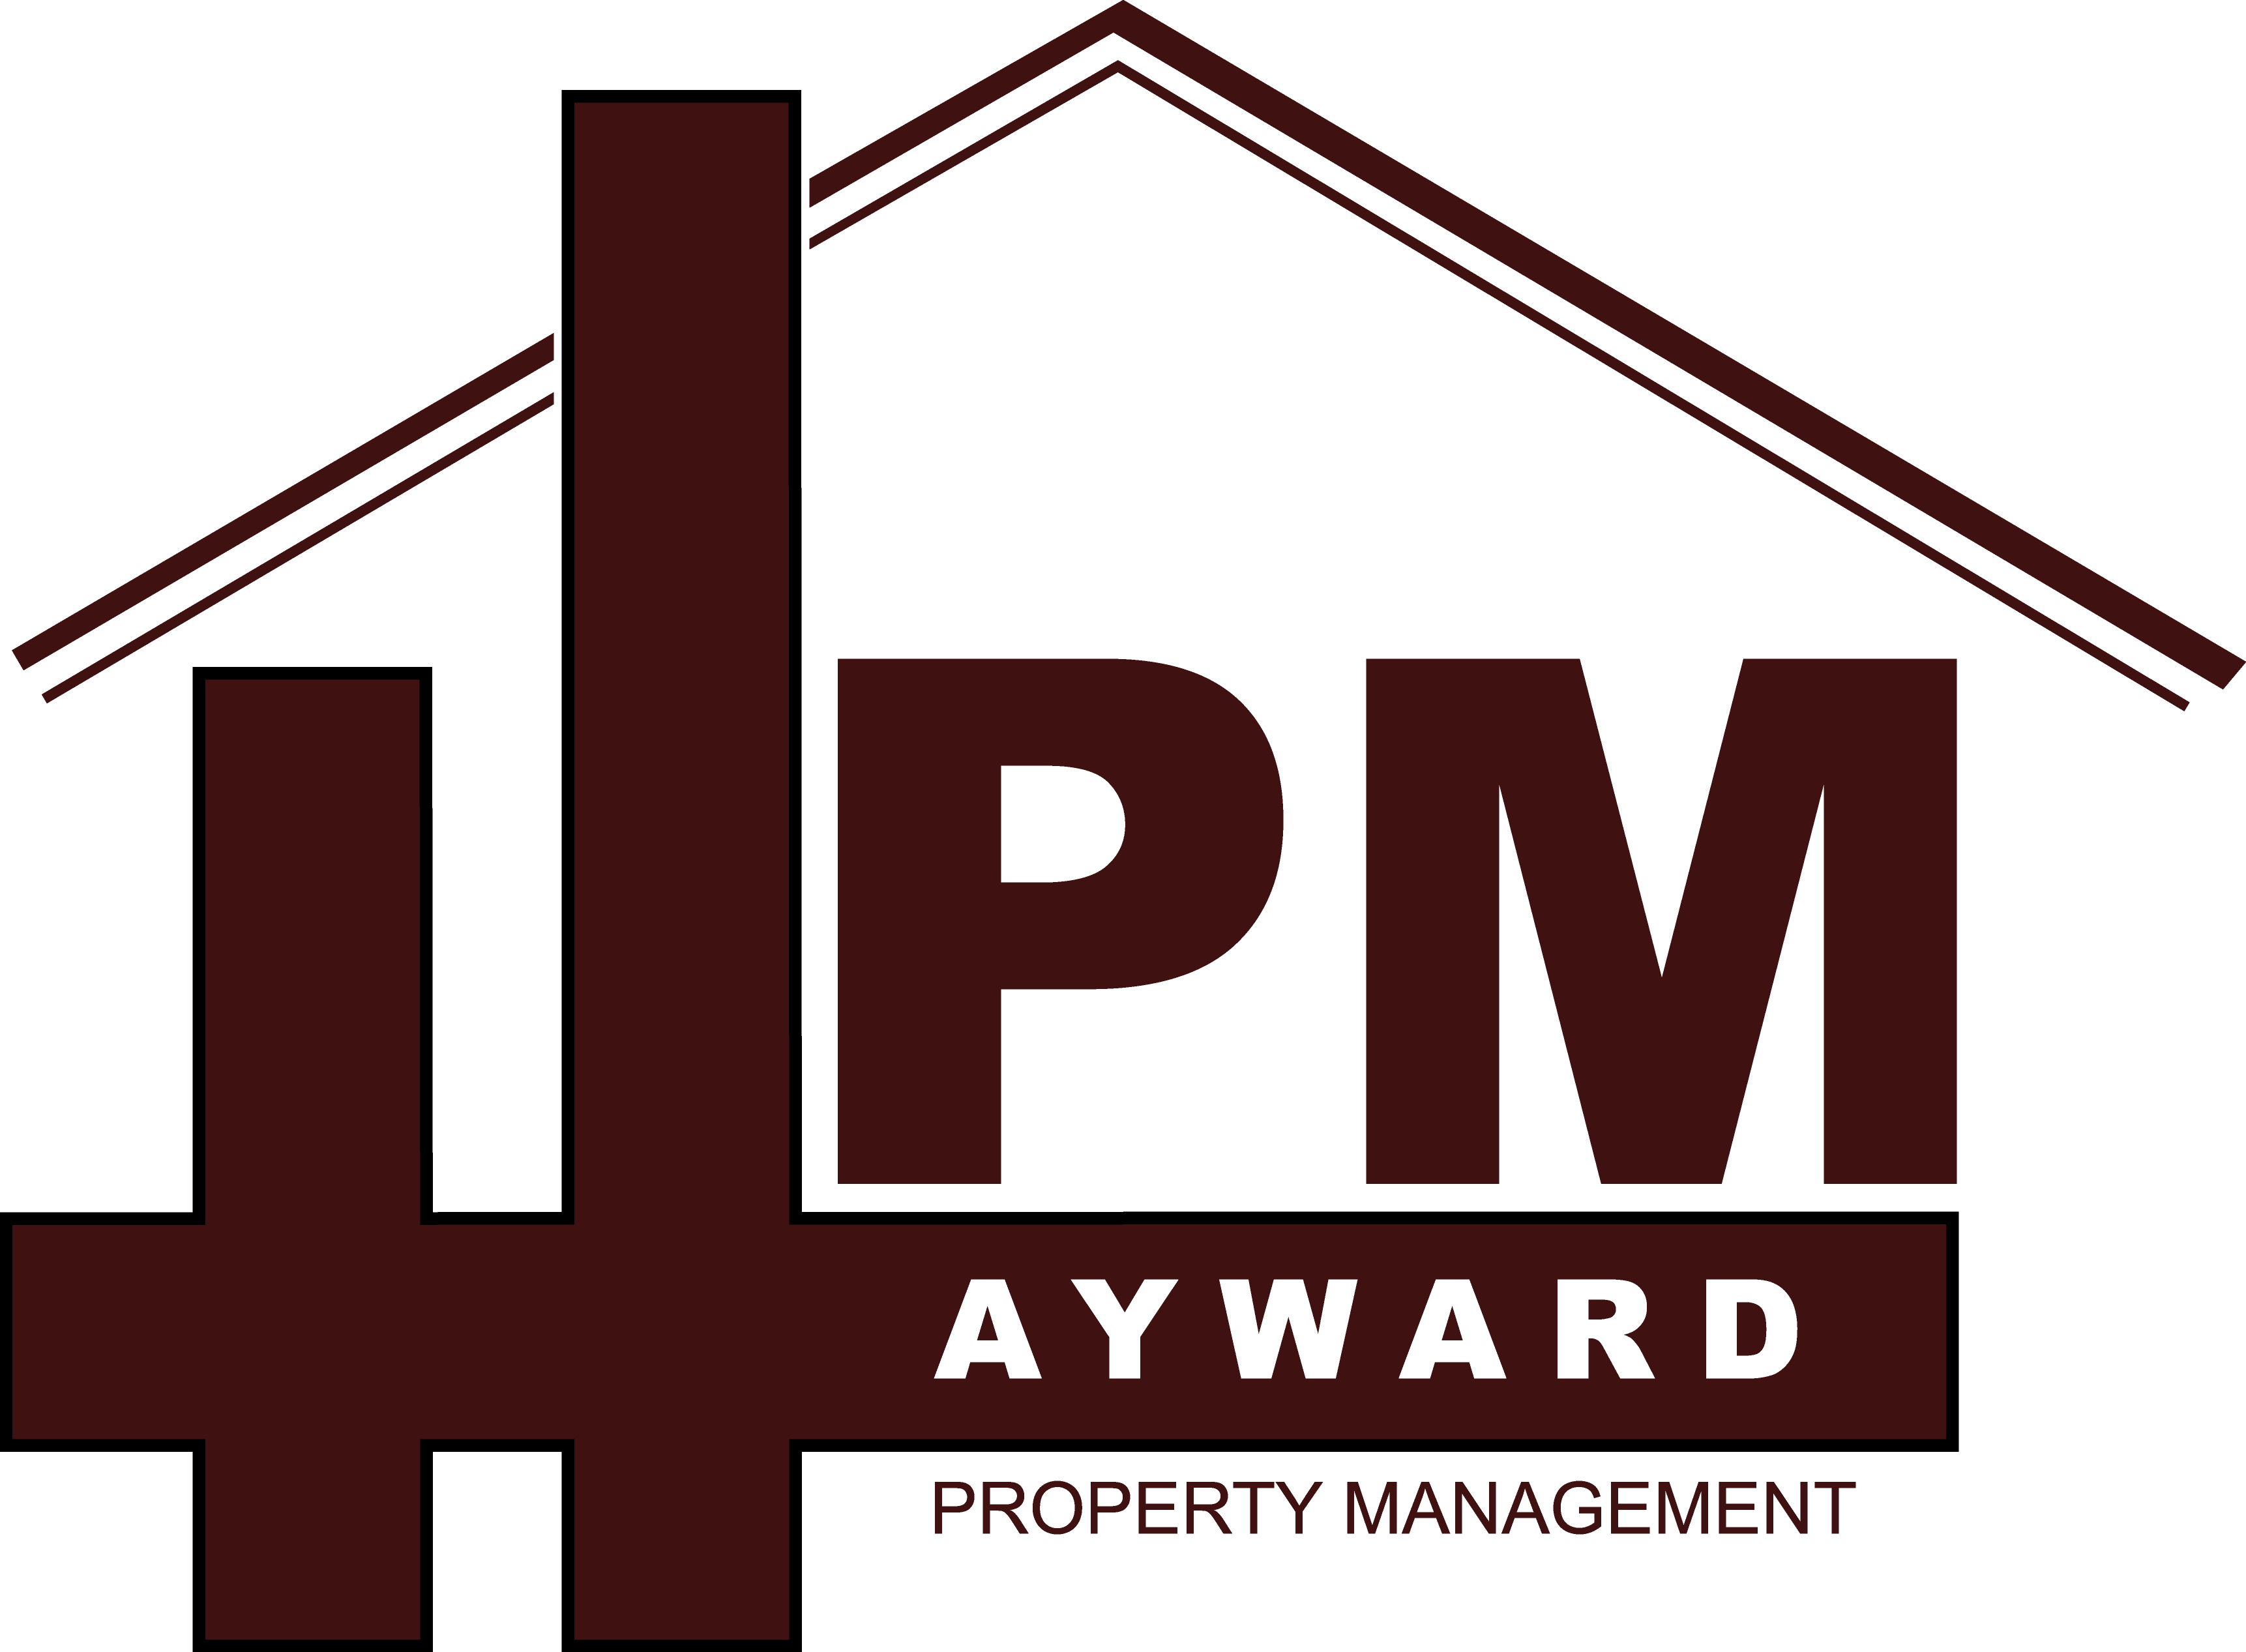 Hayward Property Management Logo